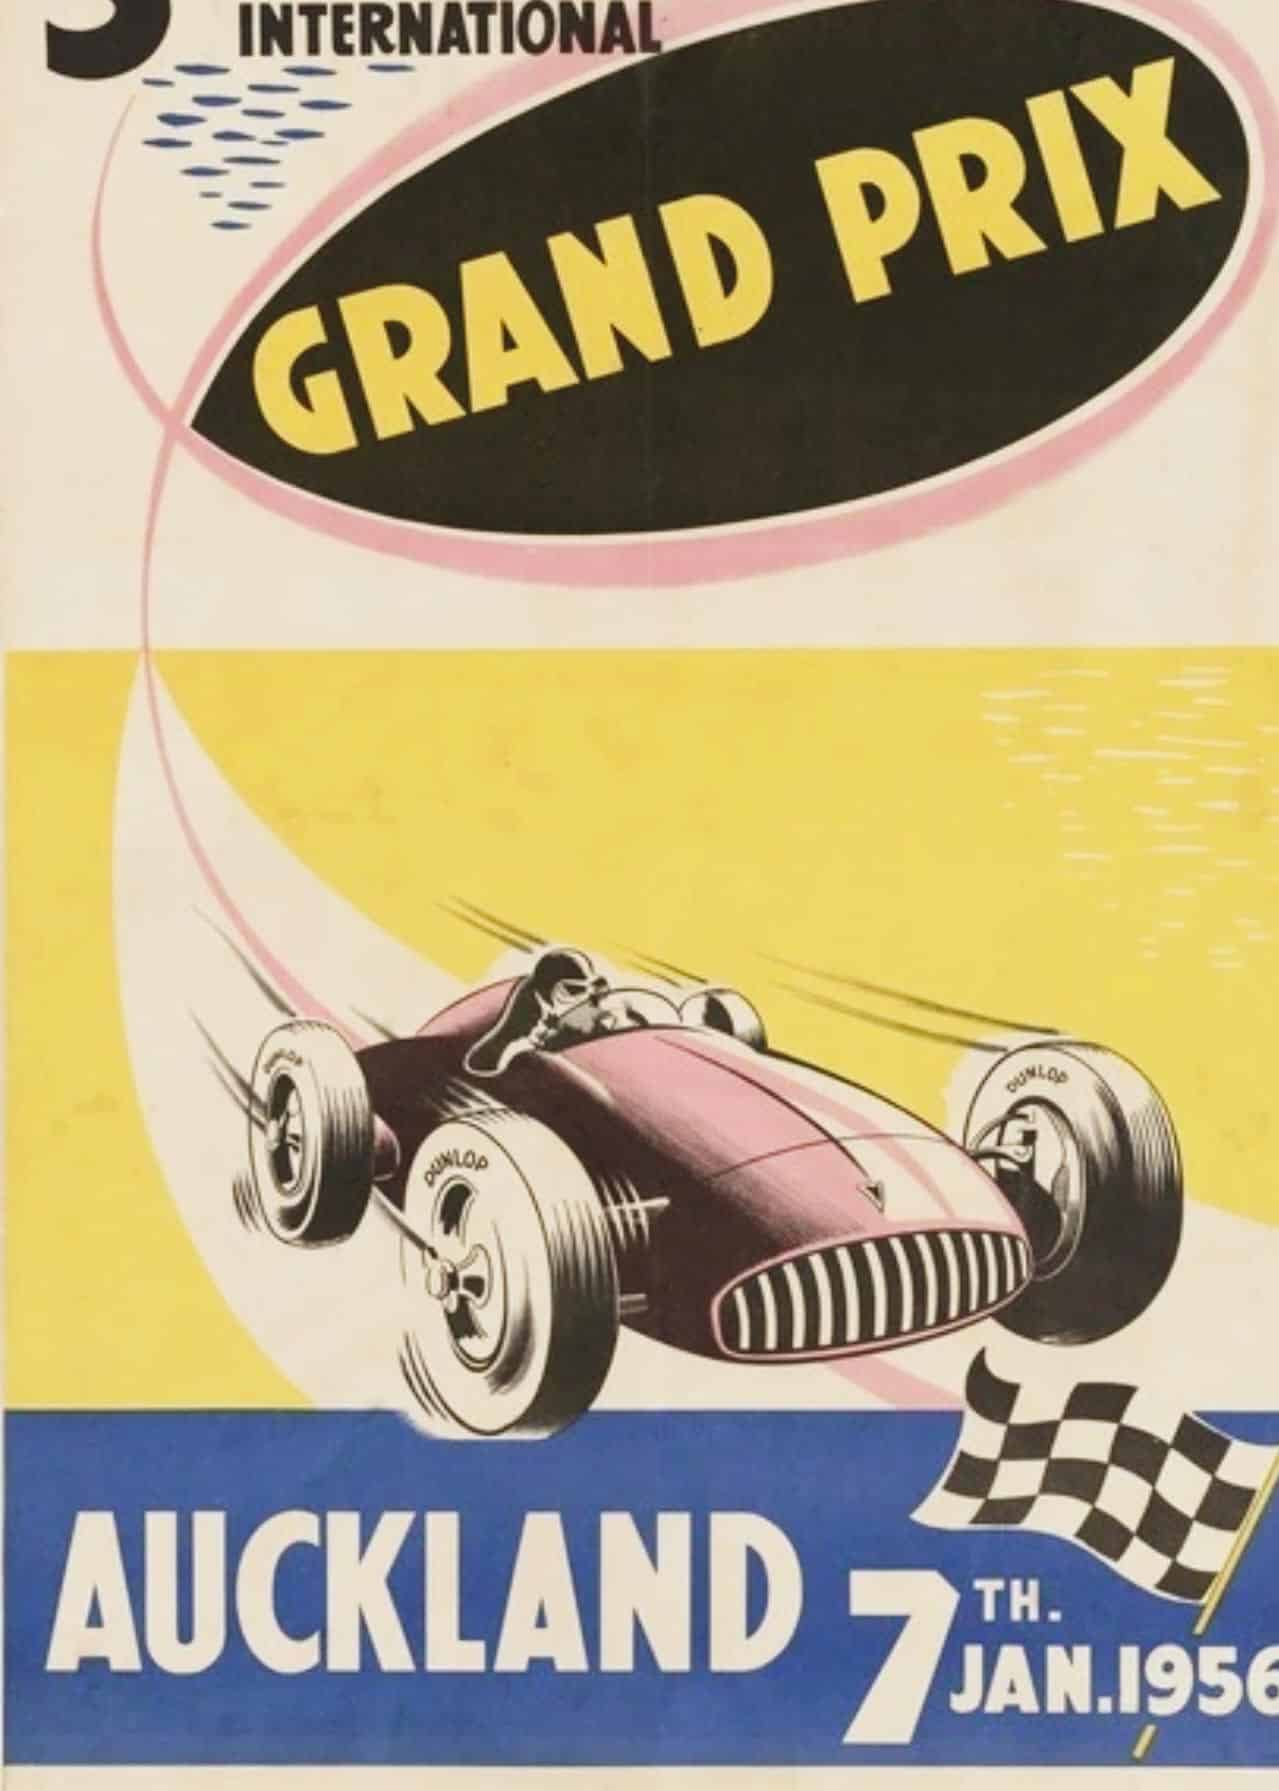 NZ GP Poster